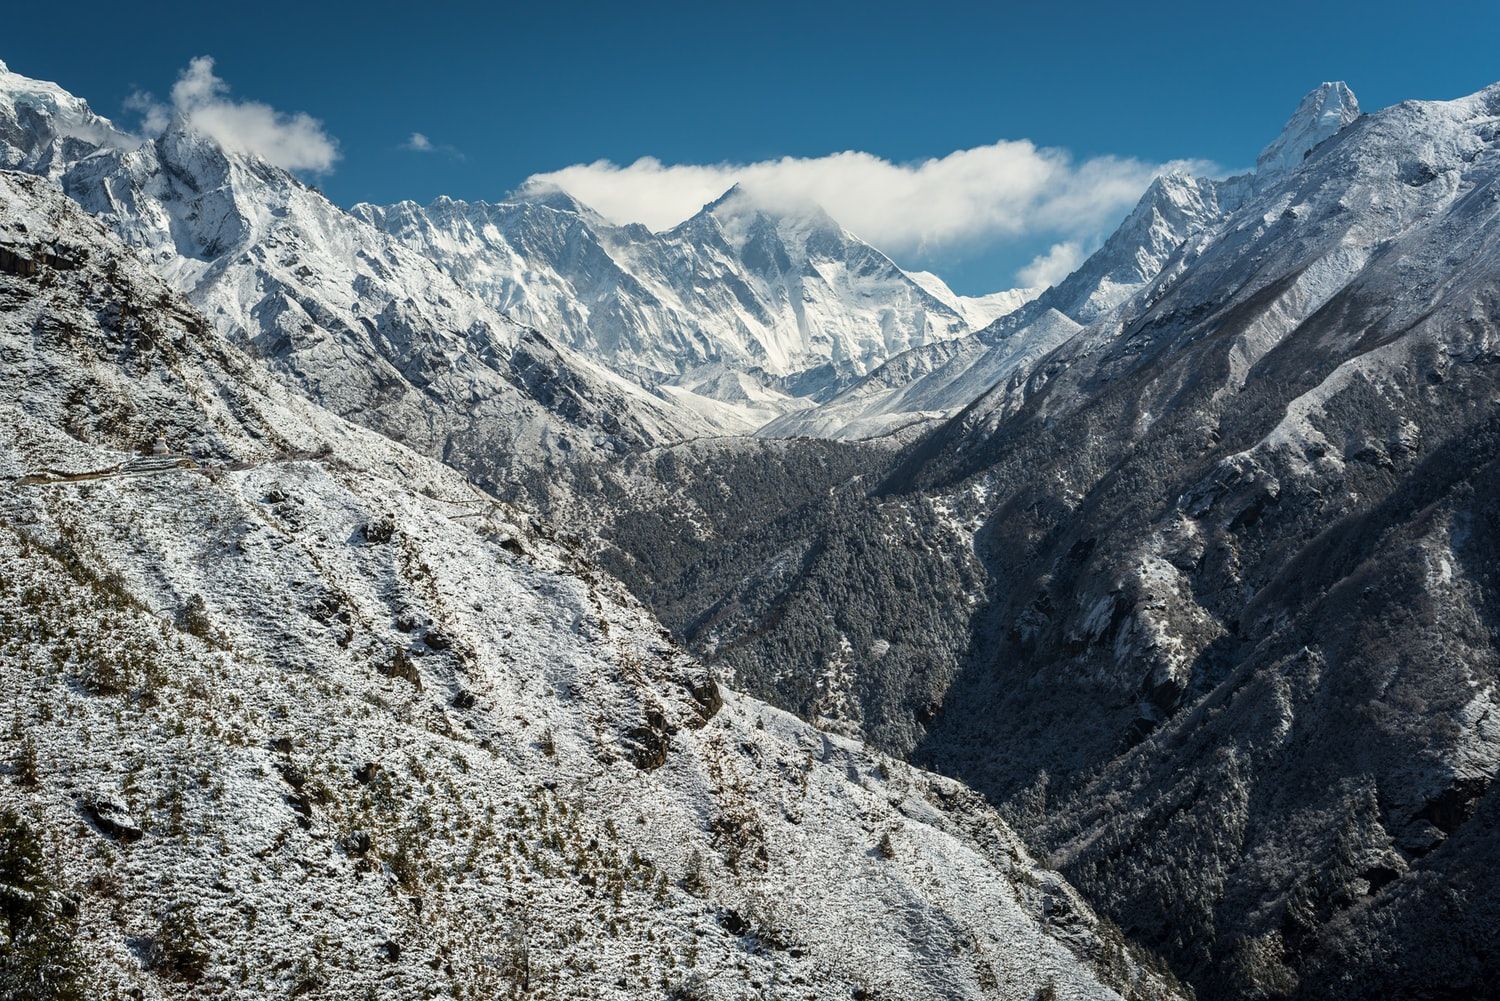 Jalur Pendakian Gunung Everest di Nepal Ditutup Karena Virus Corona